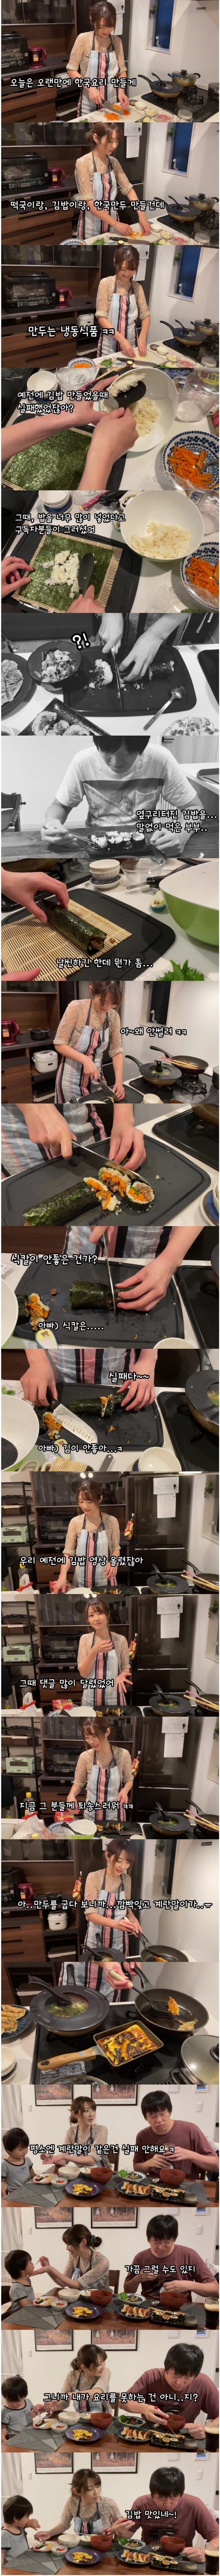 요리를 못하는 일본인 아내